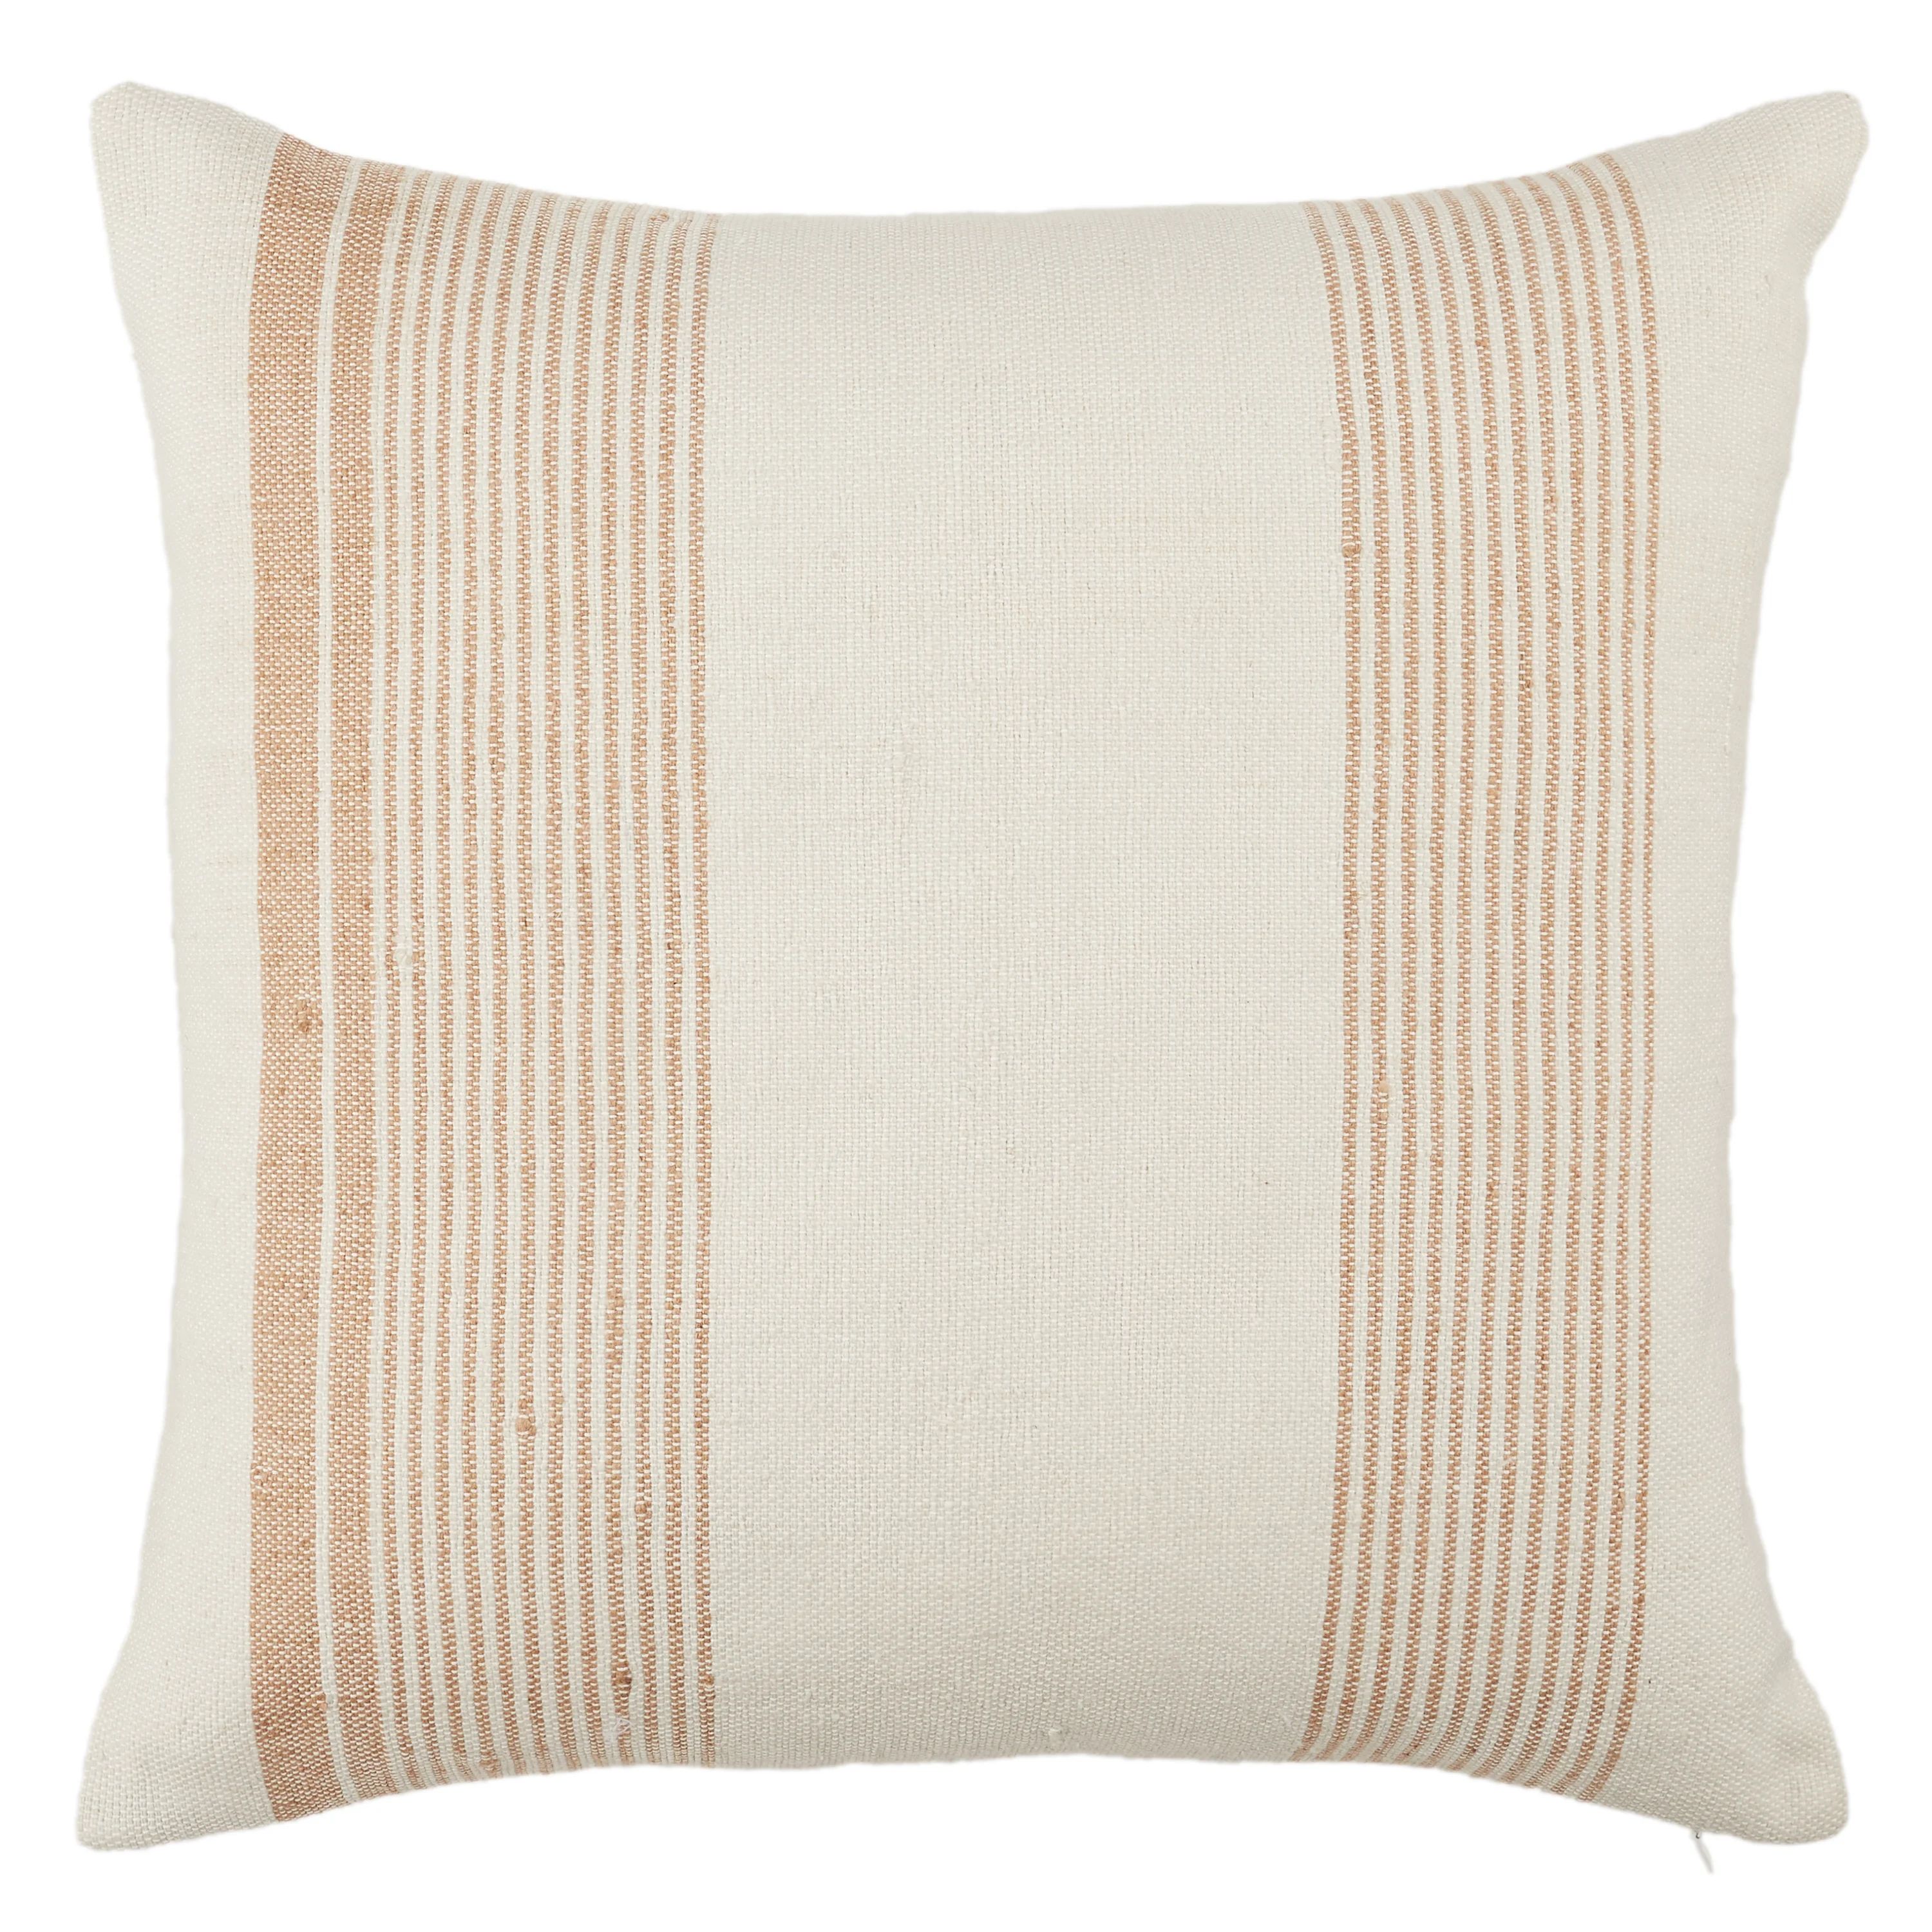 Tan/Ivory Havant Striped Indoor/Outdoor Throw Pillow | Wayfair North America